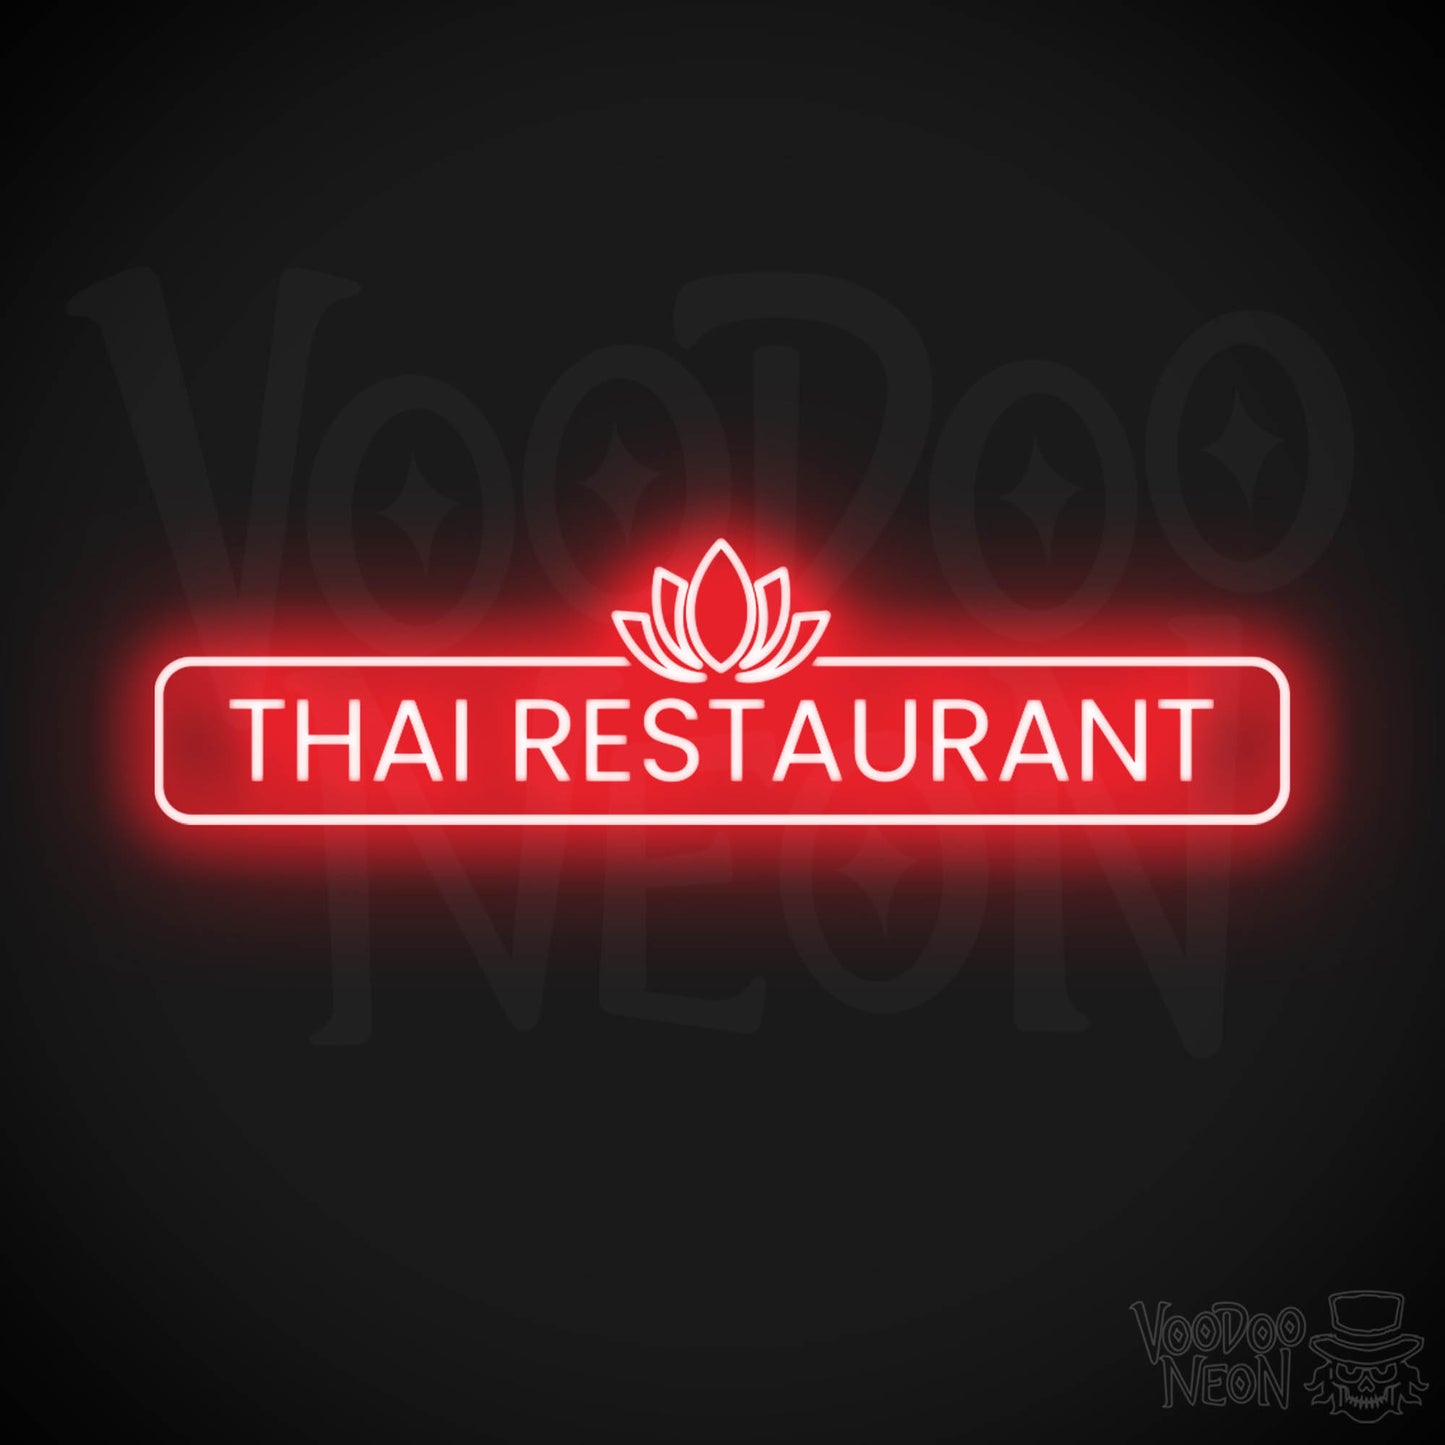 Thai Restaurant LED Neon - Red